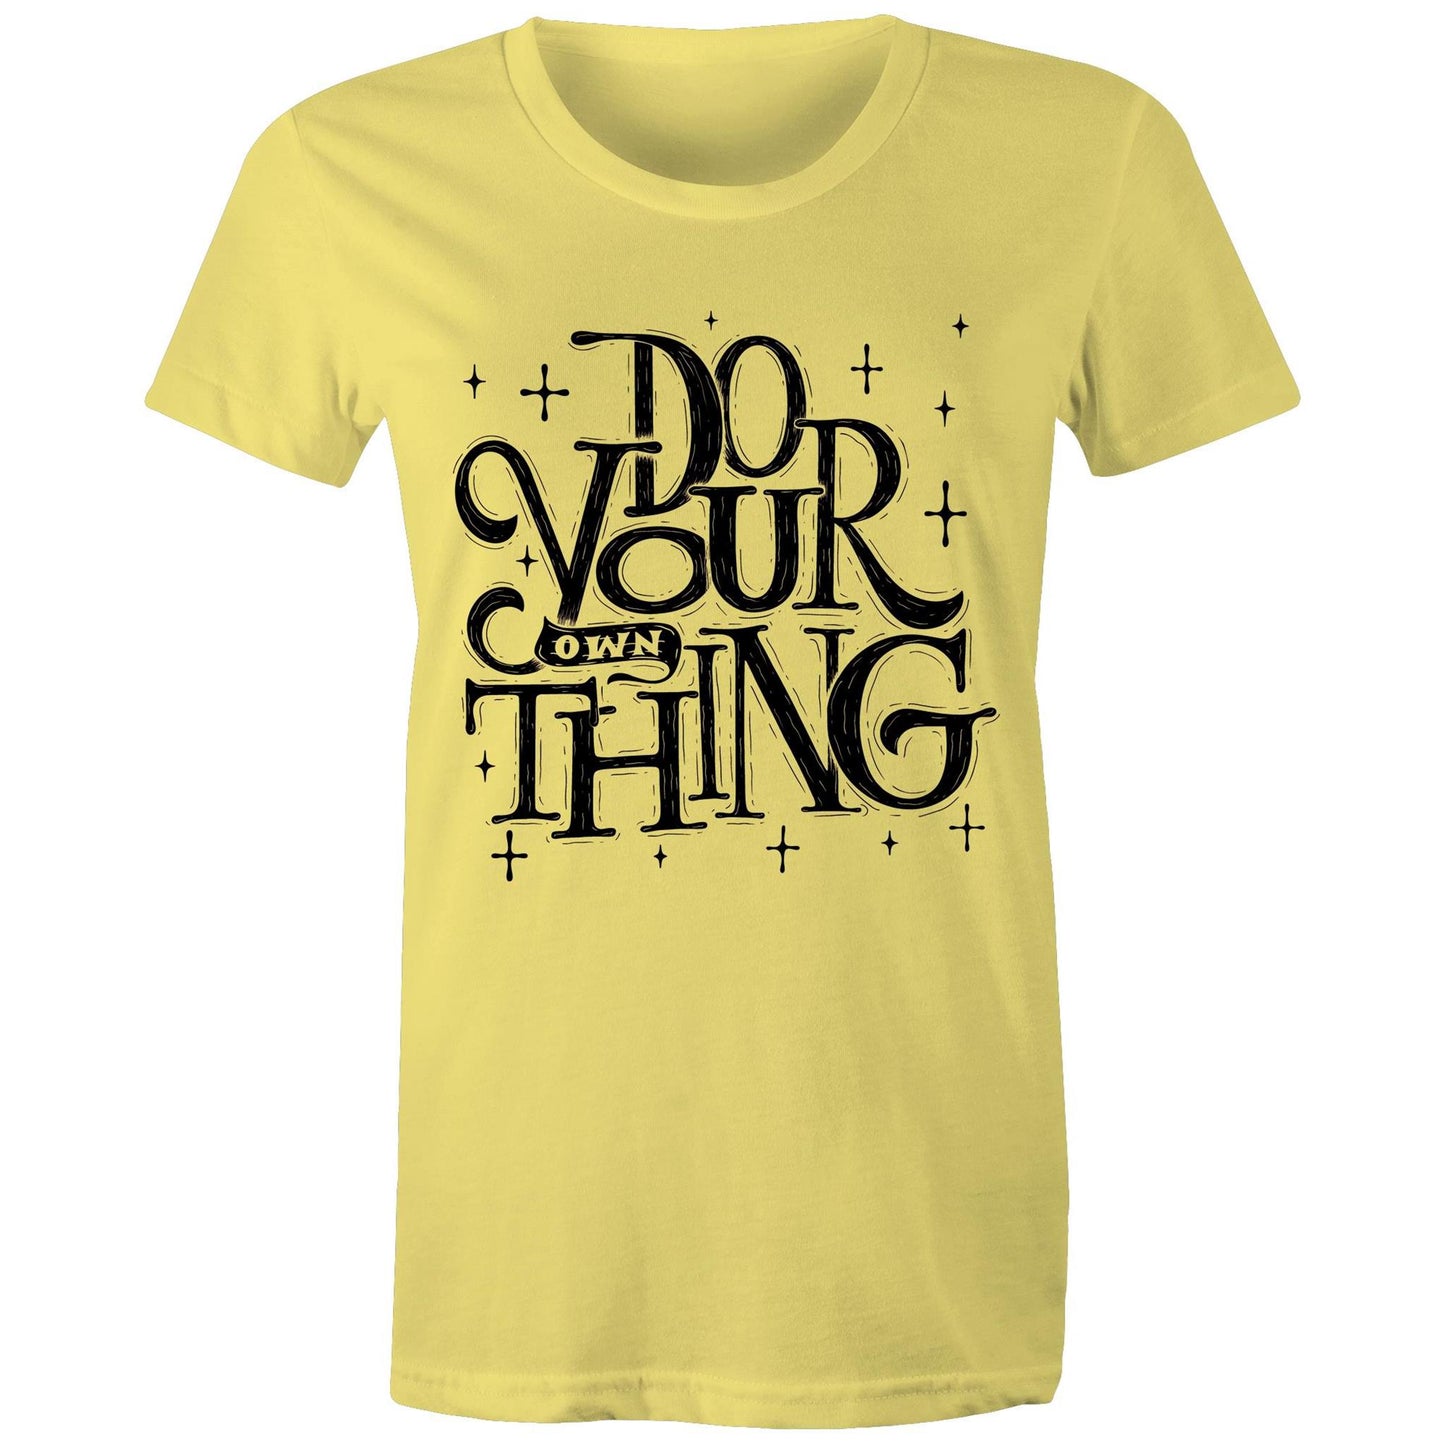 Do Your Own Thing - Womens T-shirt Yellow Womens T-shirt Magic